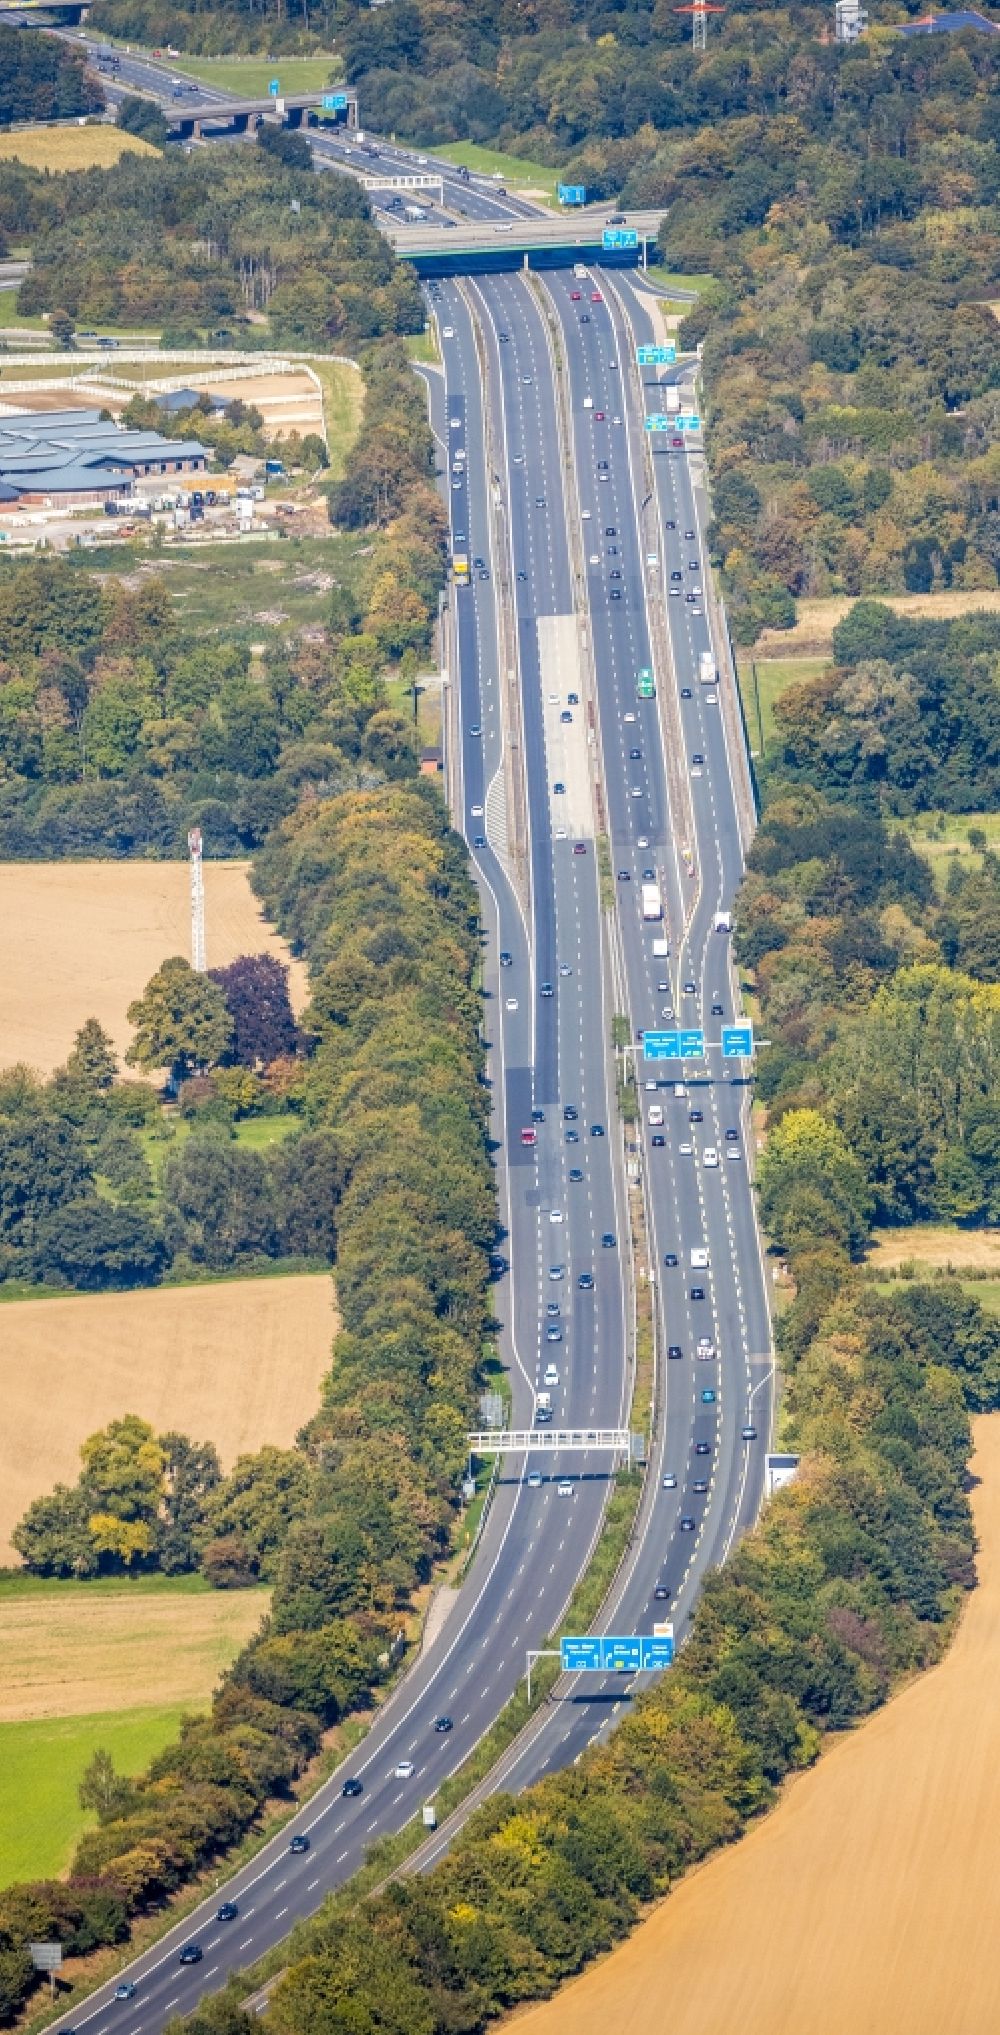 Unna von oben - Autobahn- Anschlussstelle der BAB A1 am Autobahnkreuz Dortmund-Unna mit der BAB A44 in Unna im Bundesland Nordrhein-Westfalen, Deutschland